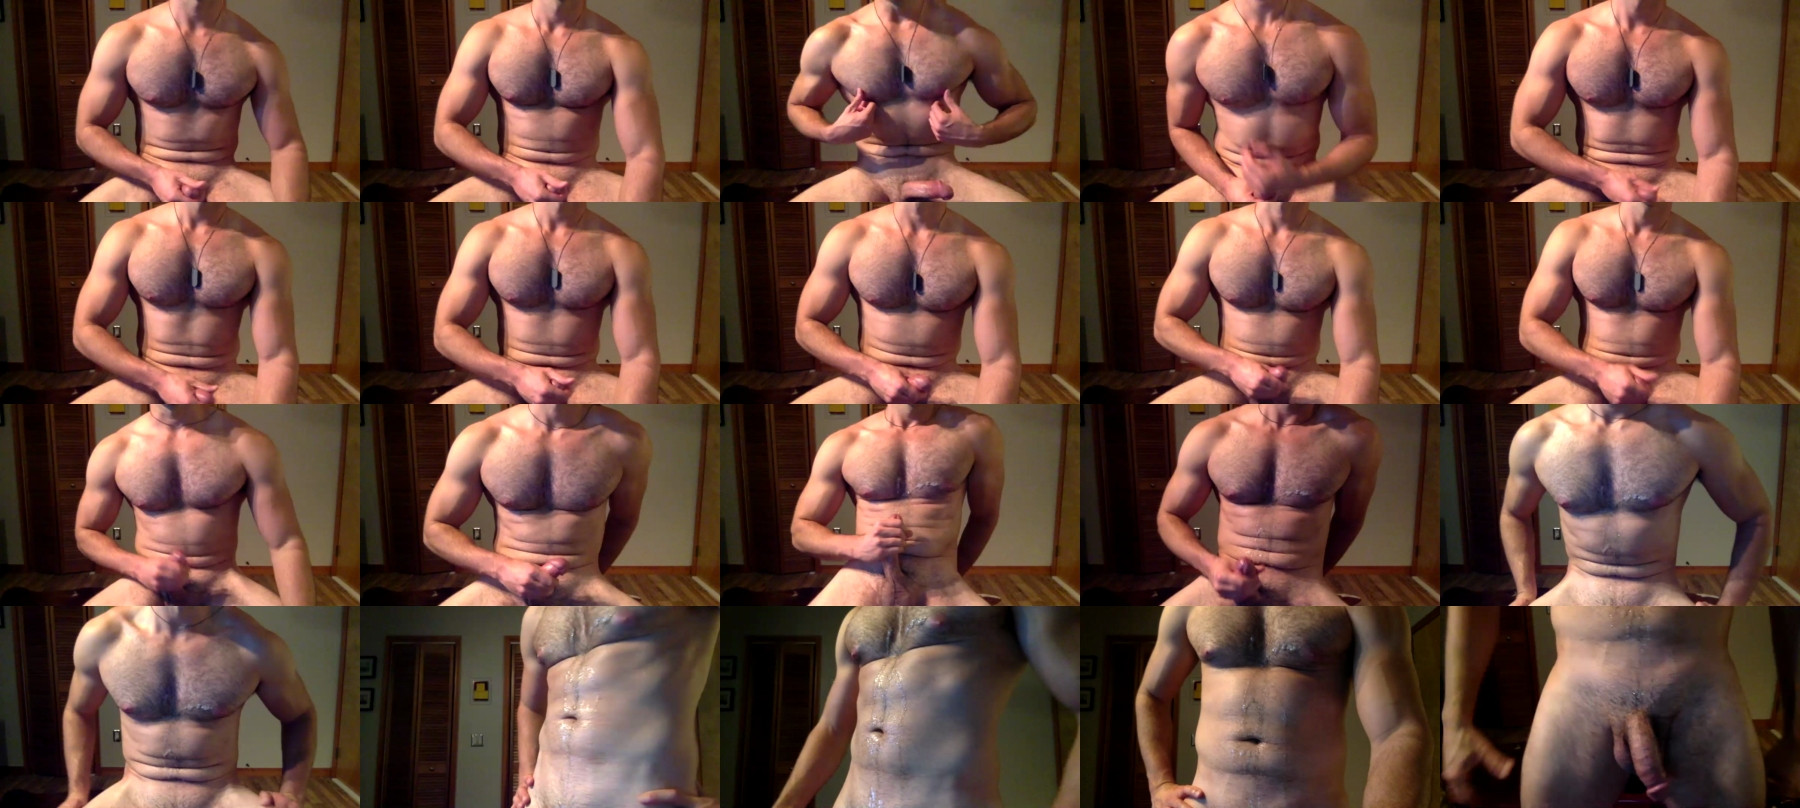 Unzipped26  22-04-2021 Male Naked